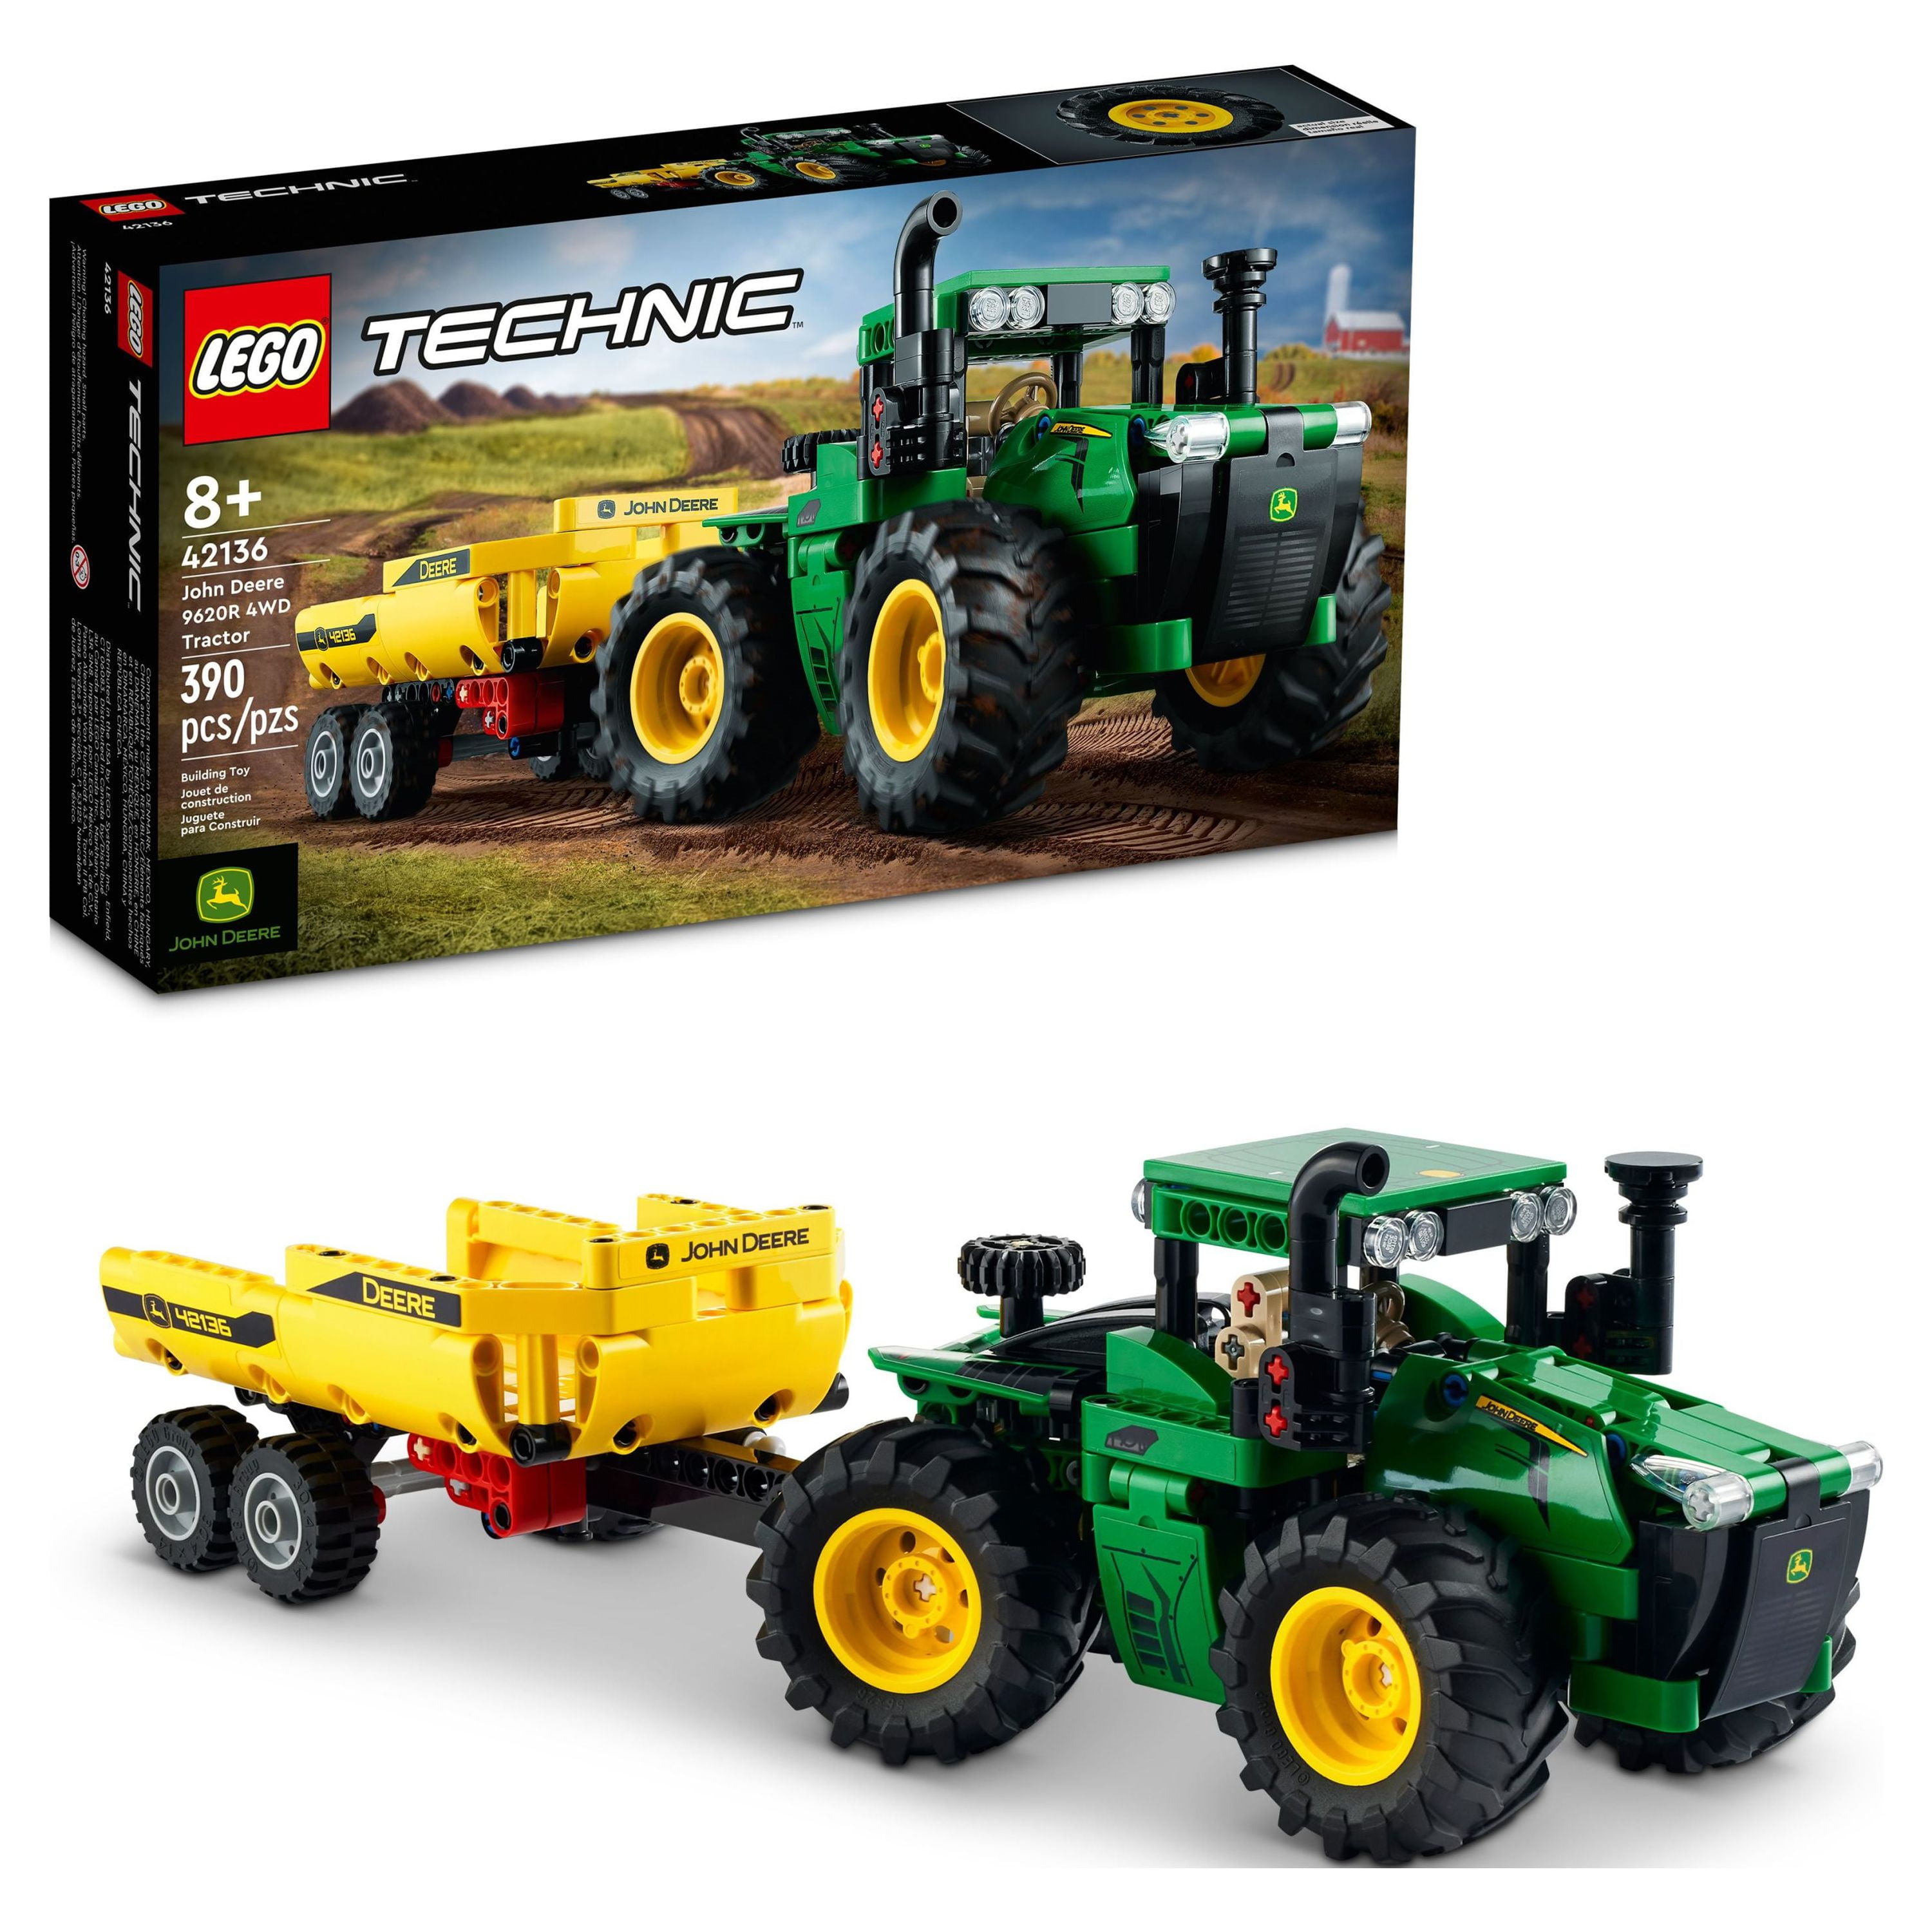 Lego Technic John Deere 9620r 4wd